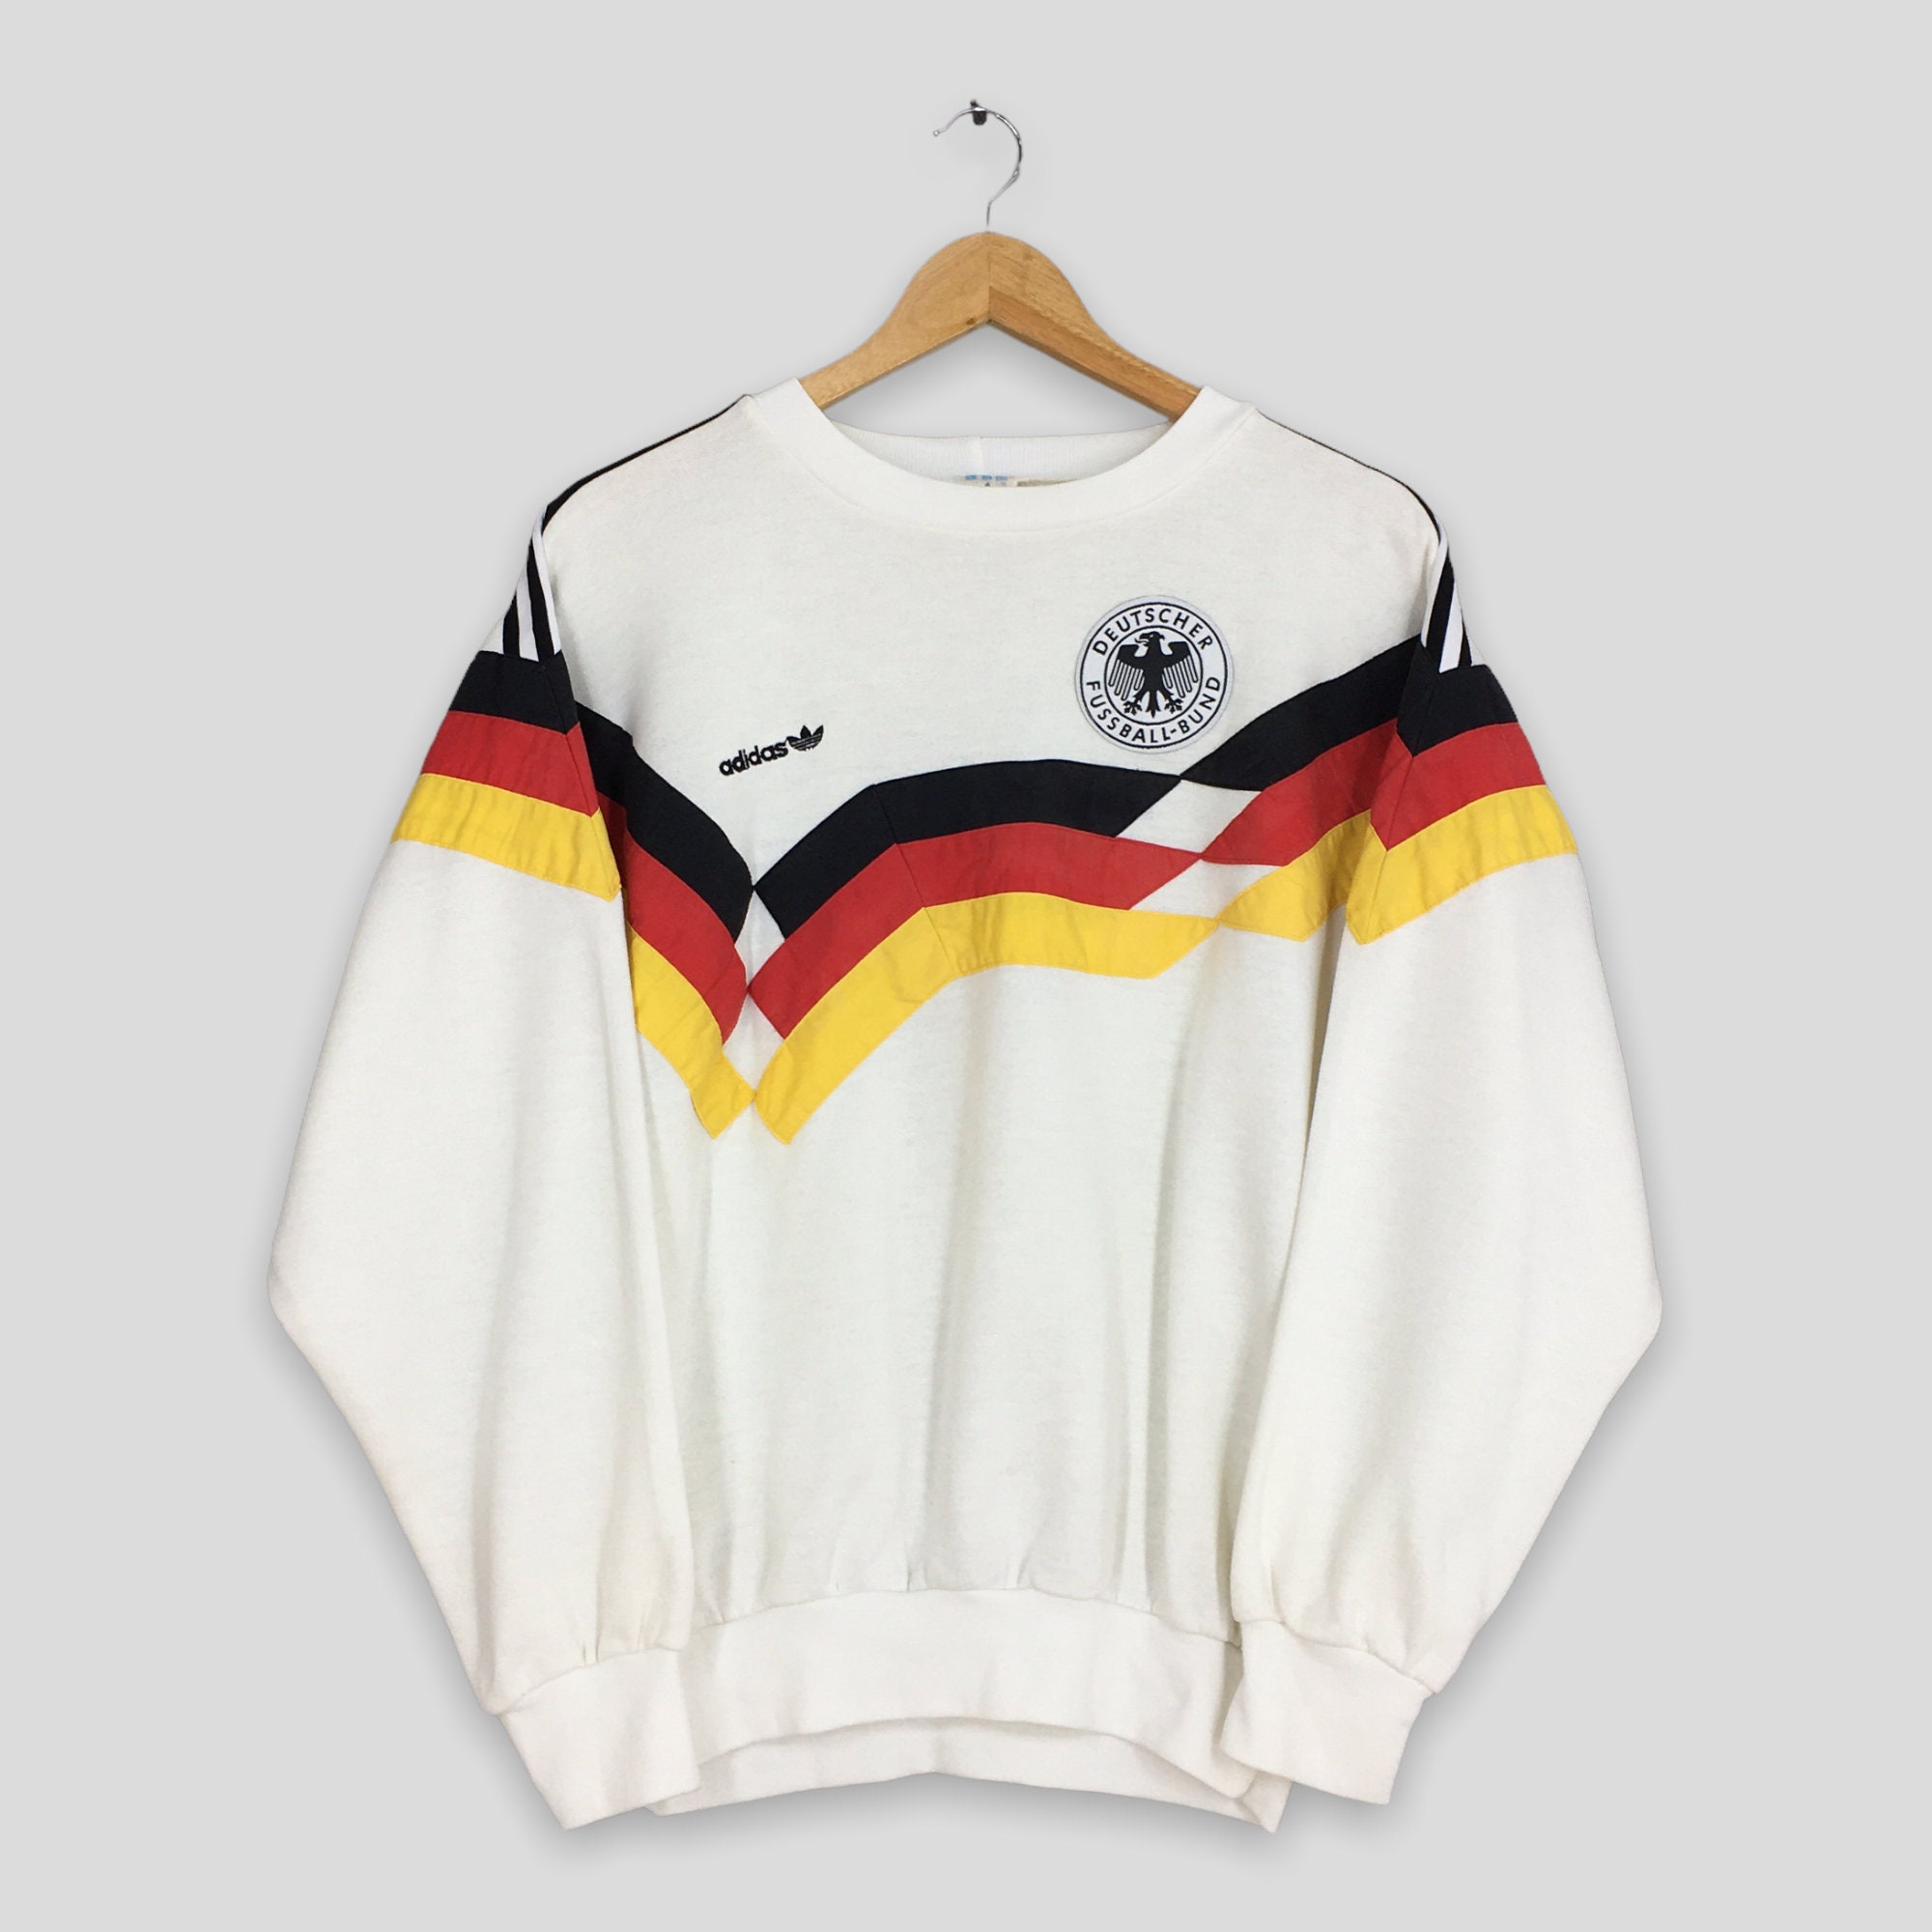 Vintage Trefoil Germany Sweatshirt Medium - Etsy